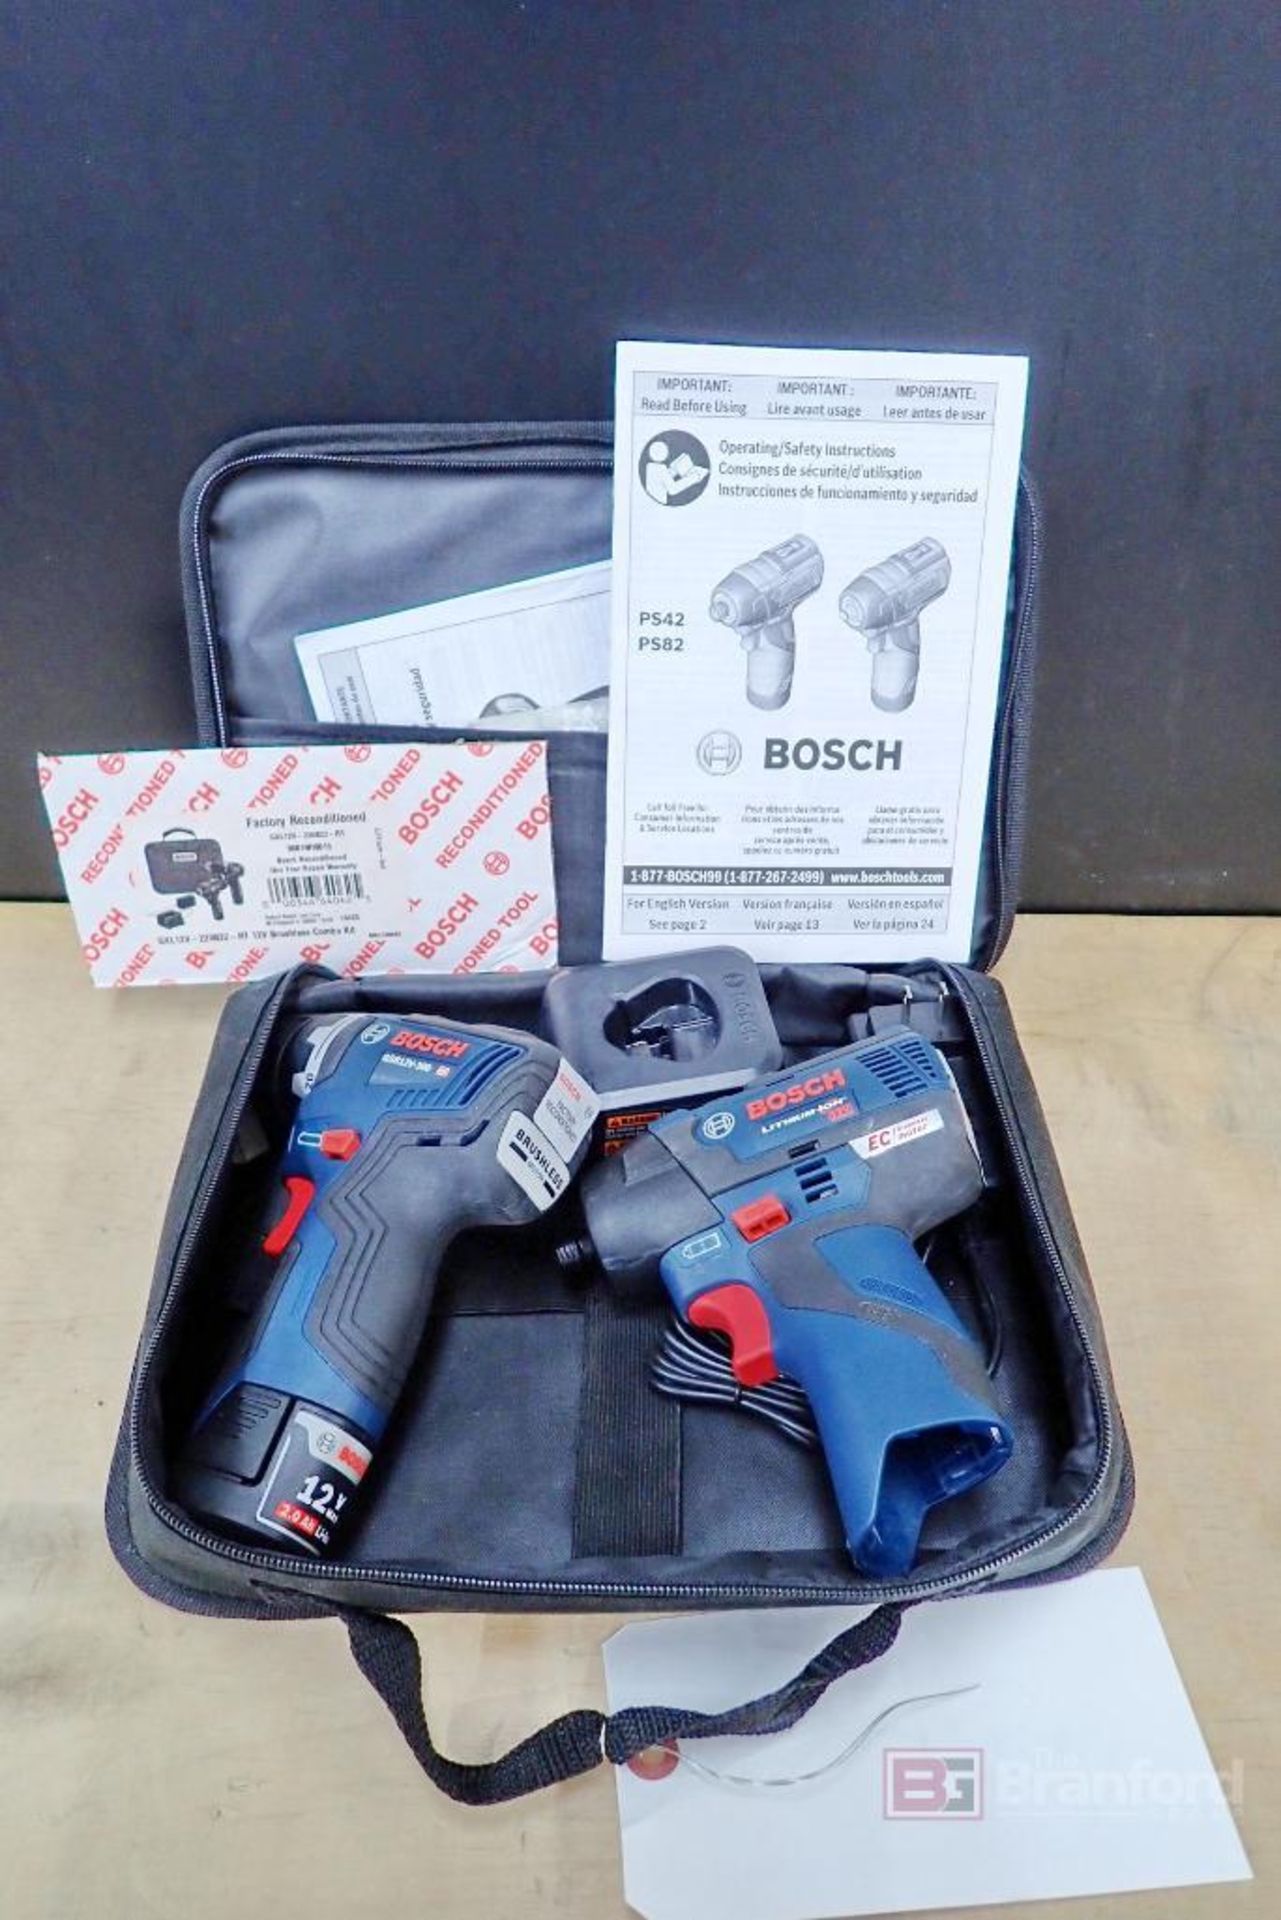 Bosch GXL12V-220B22-RT Brushless Combo Kit w/ Driller - Driver